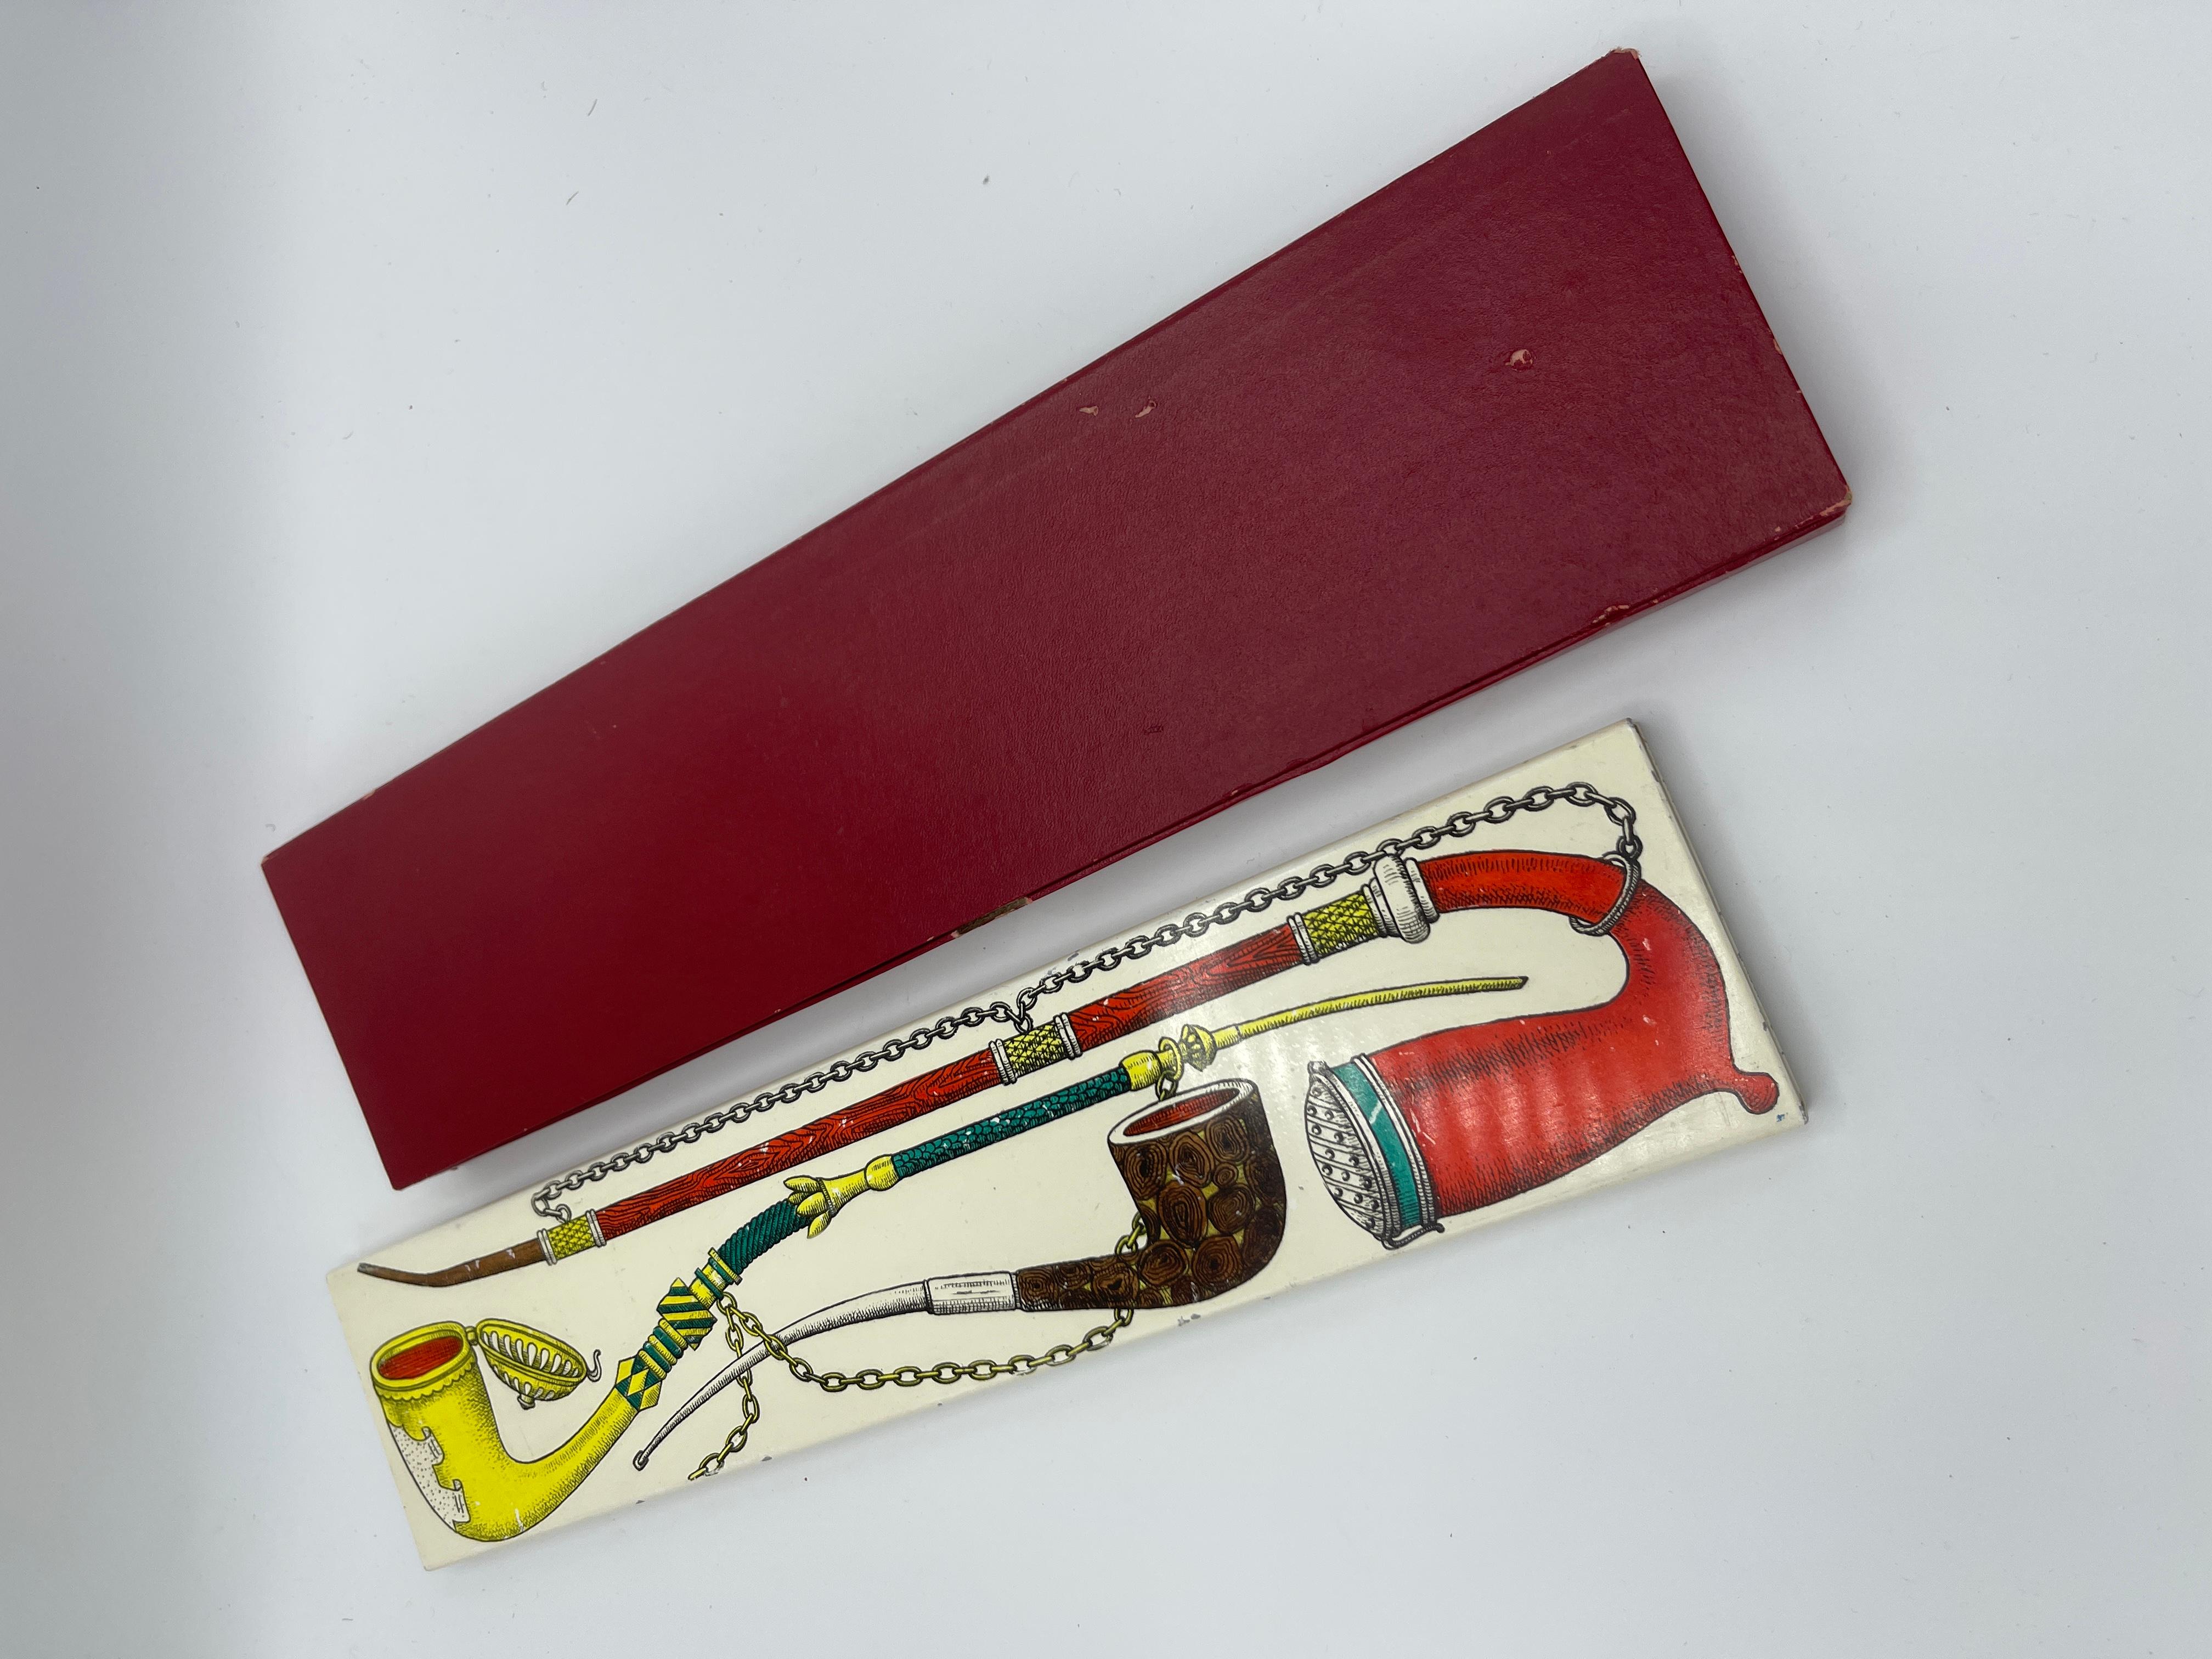 Rare et originale Boxe en métal de Piero Fornasetti des années 50, décorée de tuyaux,  avec l'emballage original. en très bon état et original, utilisé pour les allumettes, les cigarettes, les bijoux et plus.